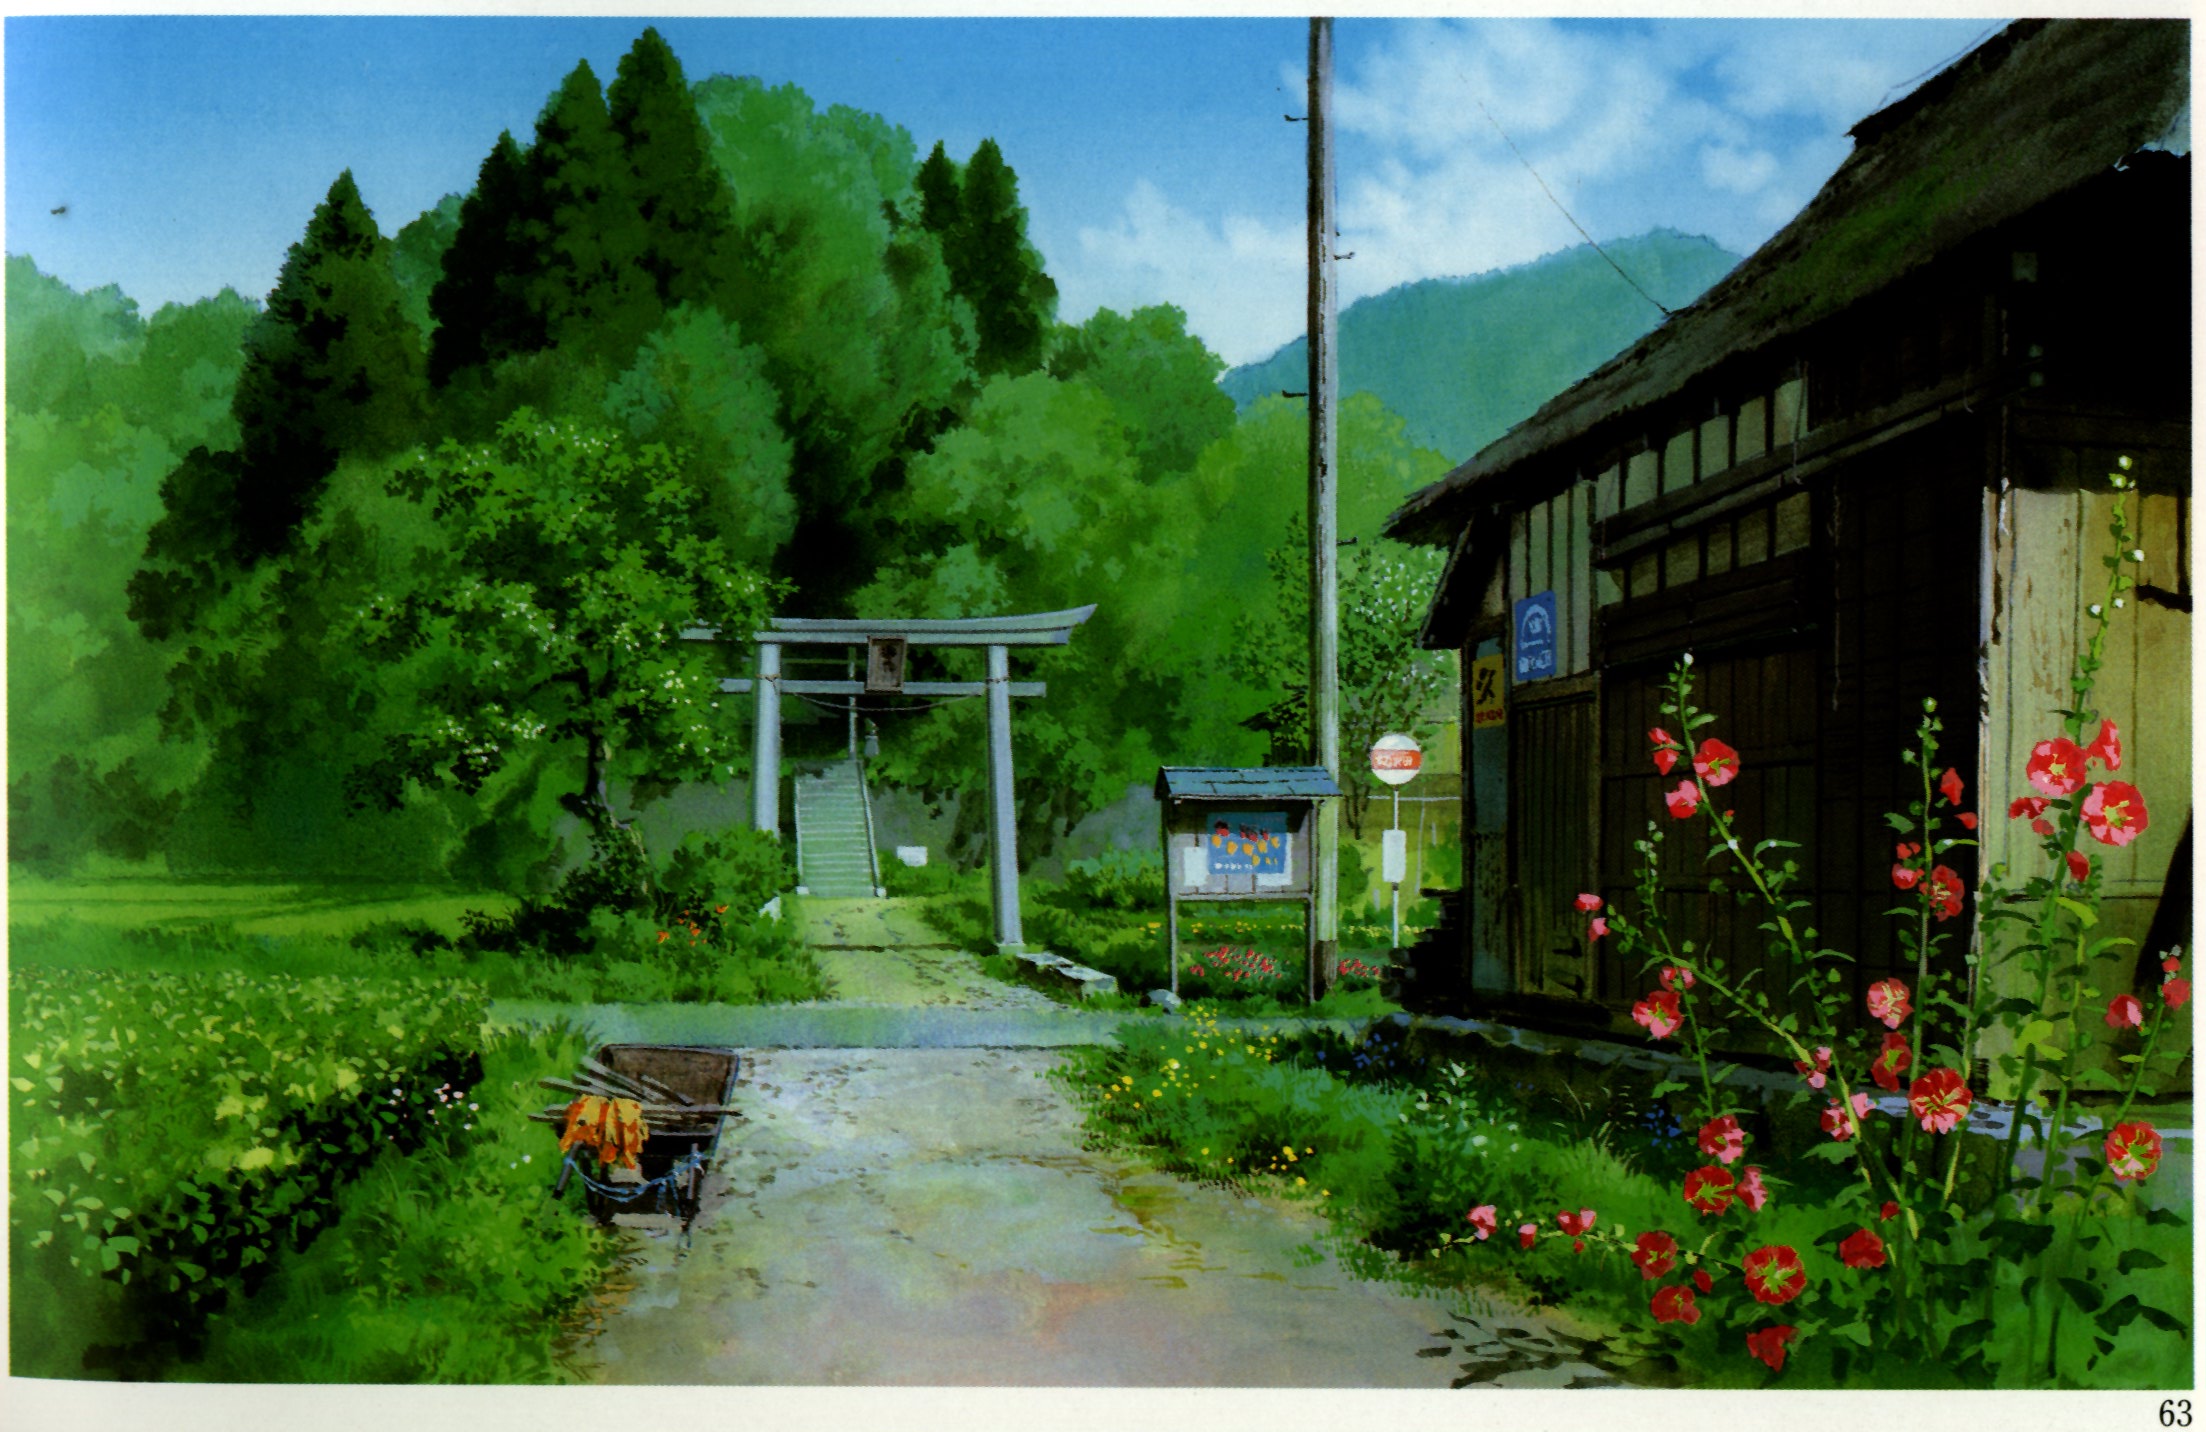 Studio Ghibli desktop wallpaper.